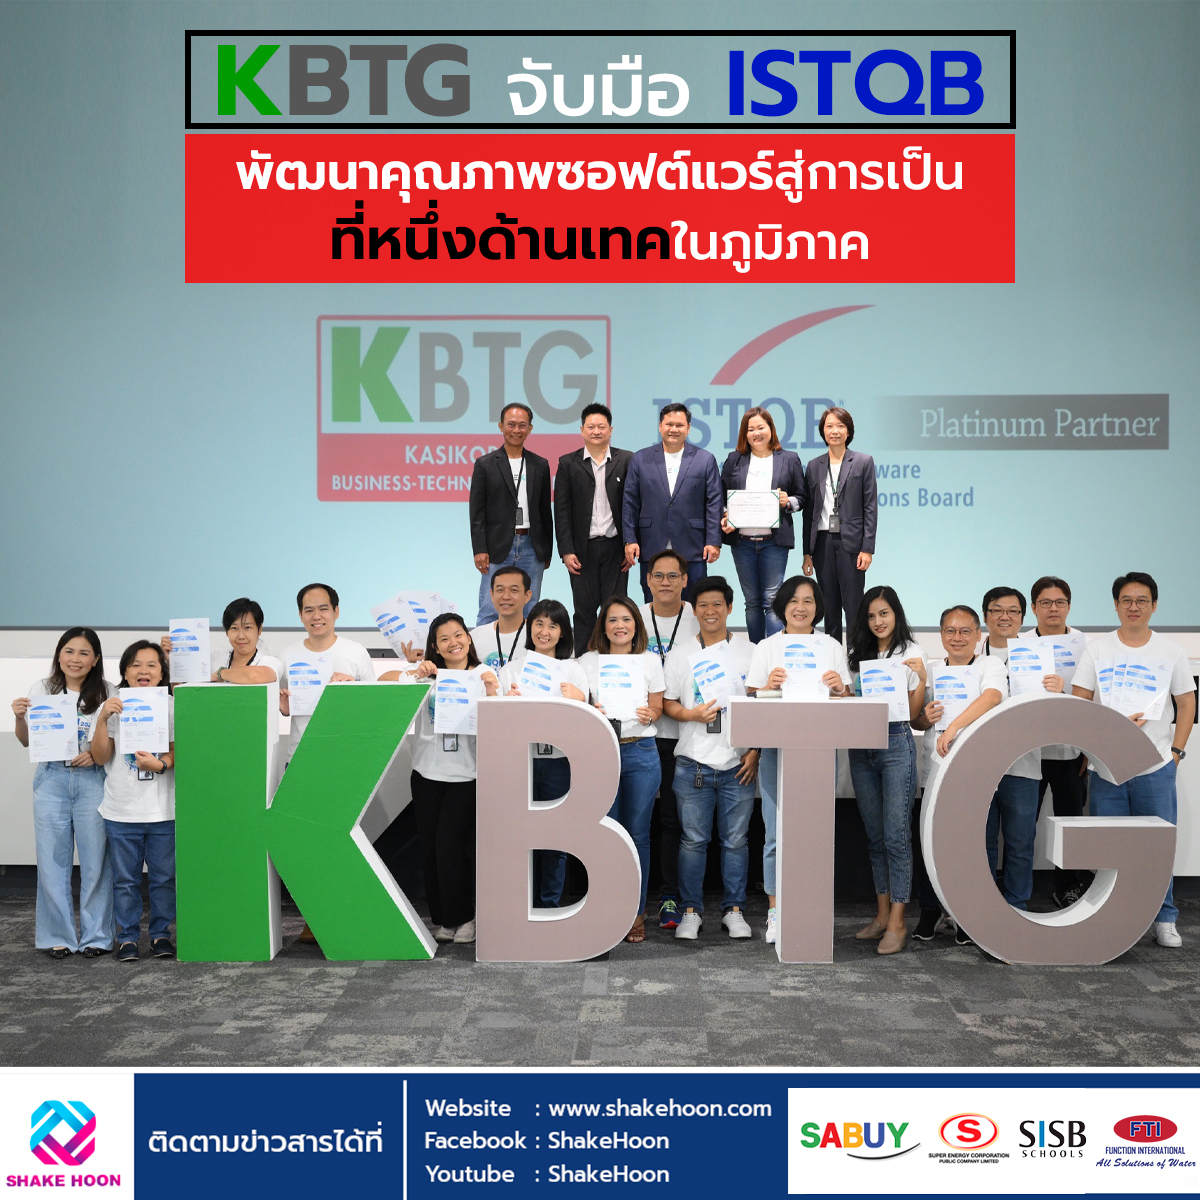 KBTG จับมือ ISTQB พัฒนาคุณภาพซอฟต์แวร์สู่การเป็นที่หนึ่งด้านเทคในภูมิภาค